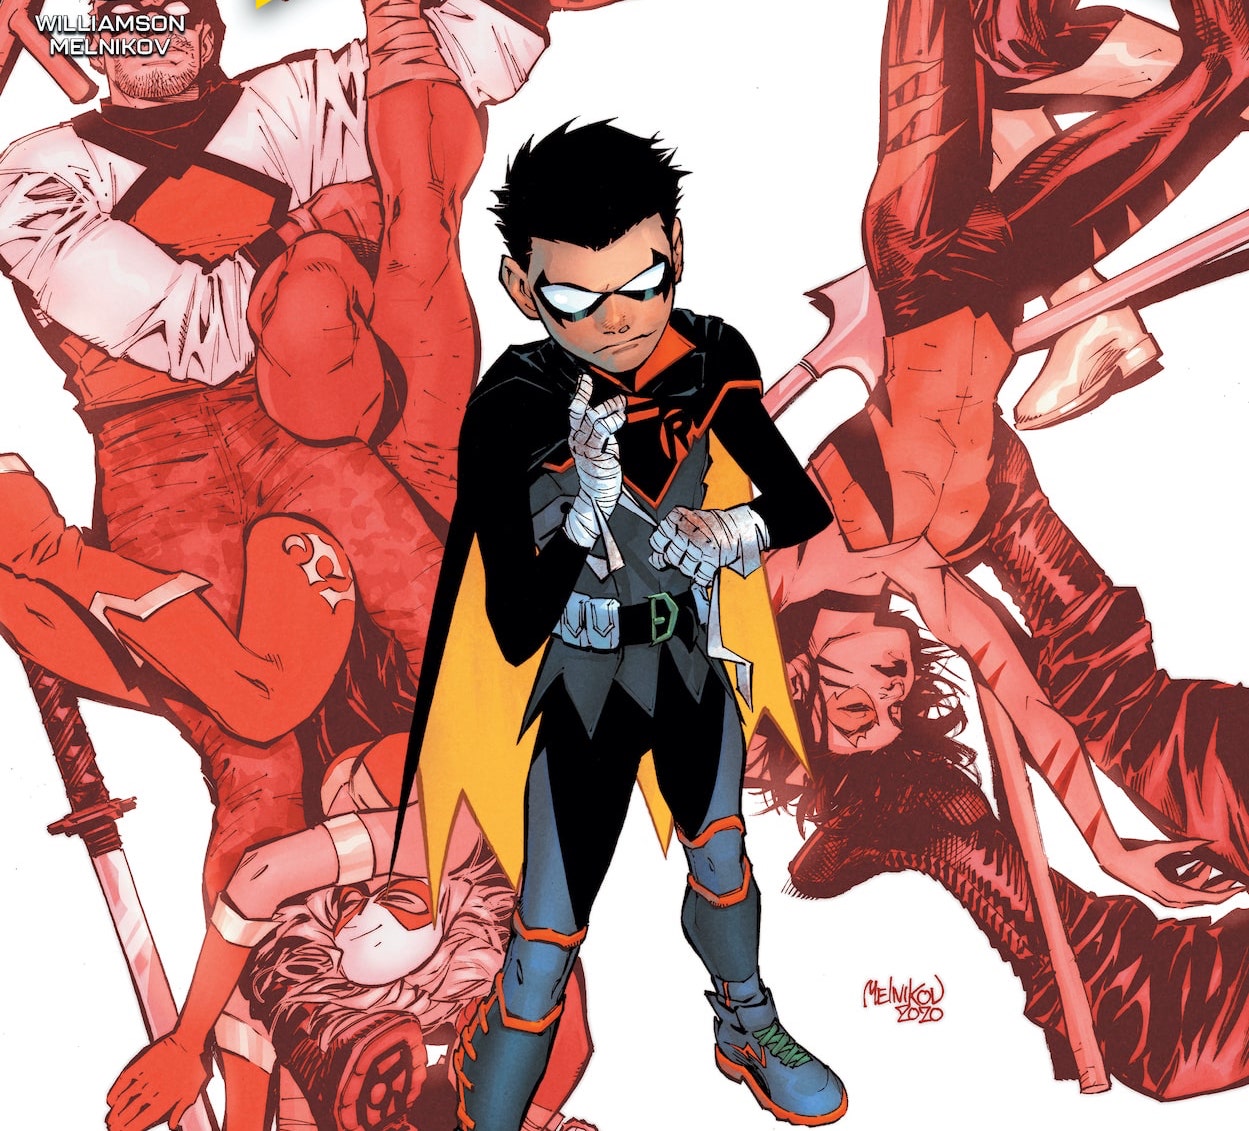 DC Comics launching Damian Wayne led series 'Robin'